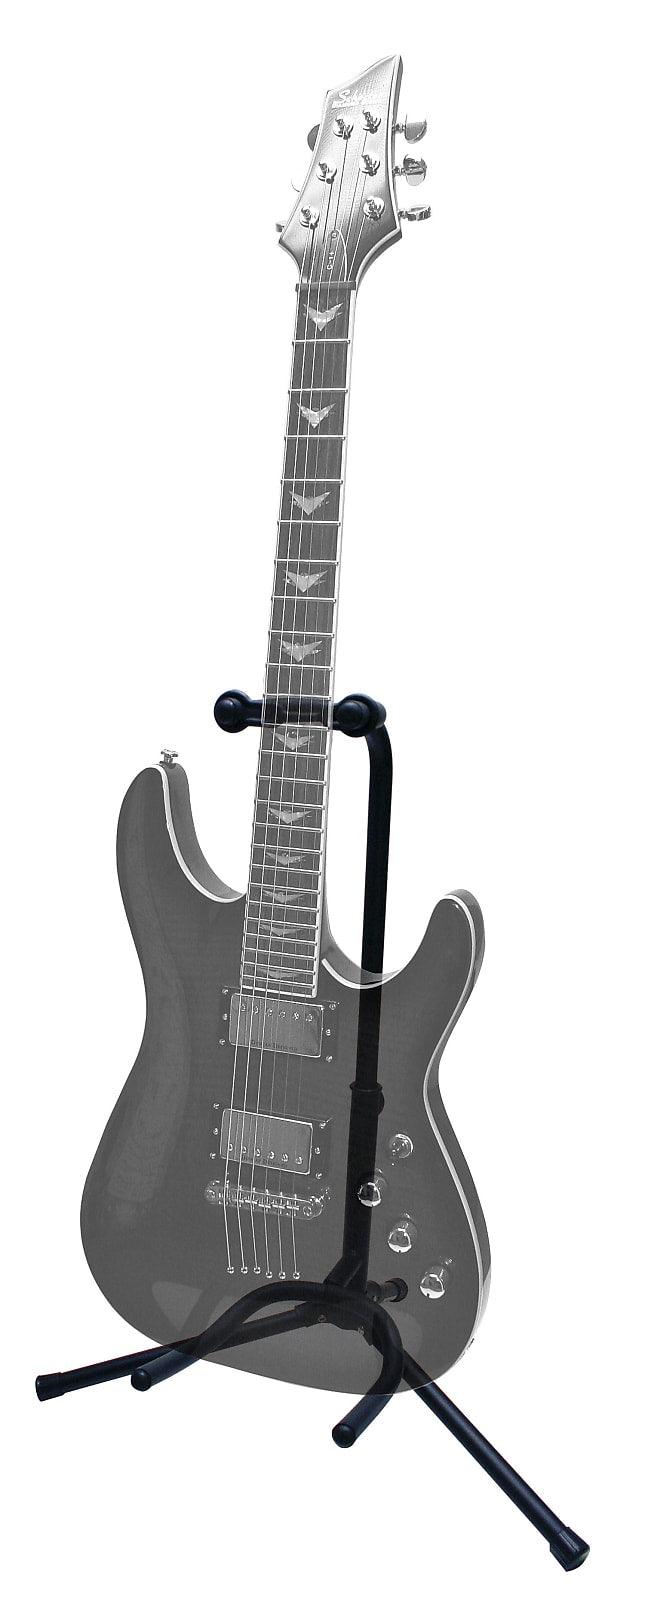 Rok-It Standard Guitar Stand